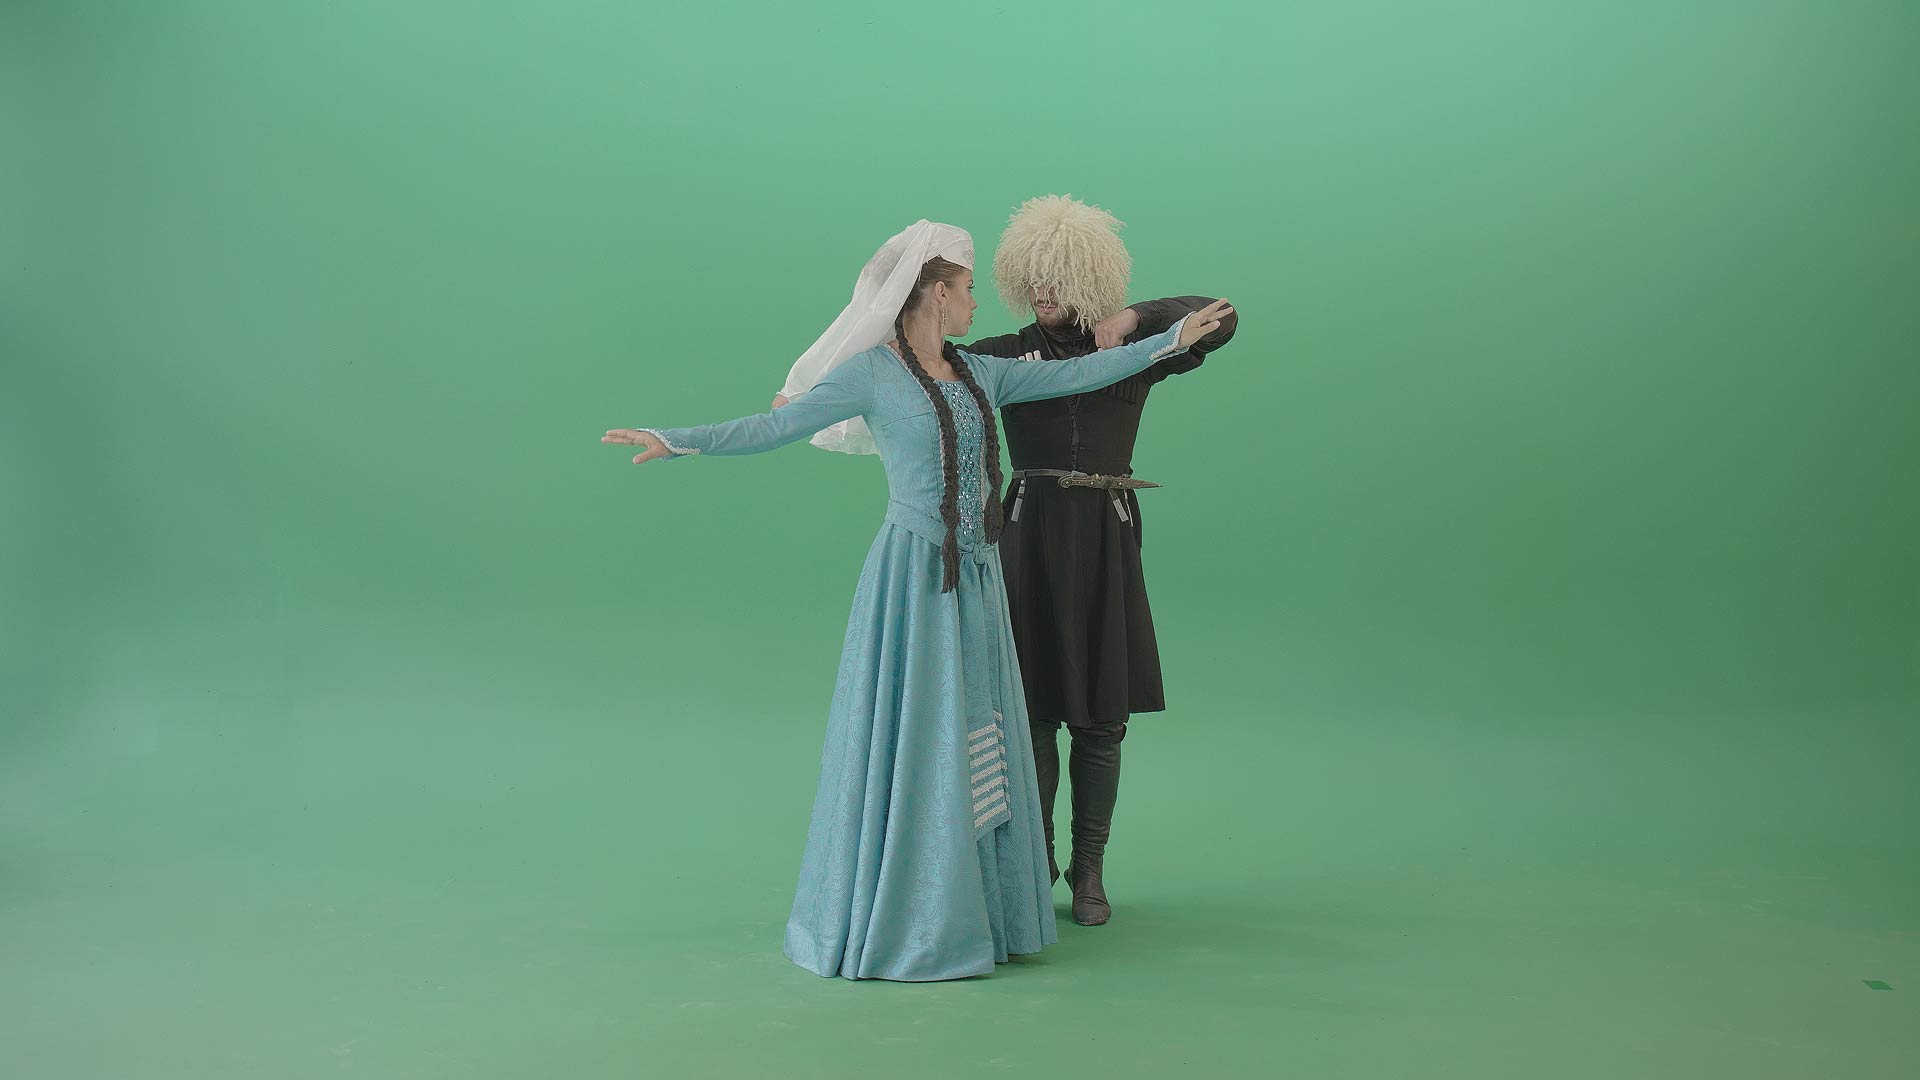 Perkhuli and Khorumi dance video